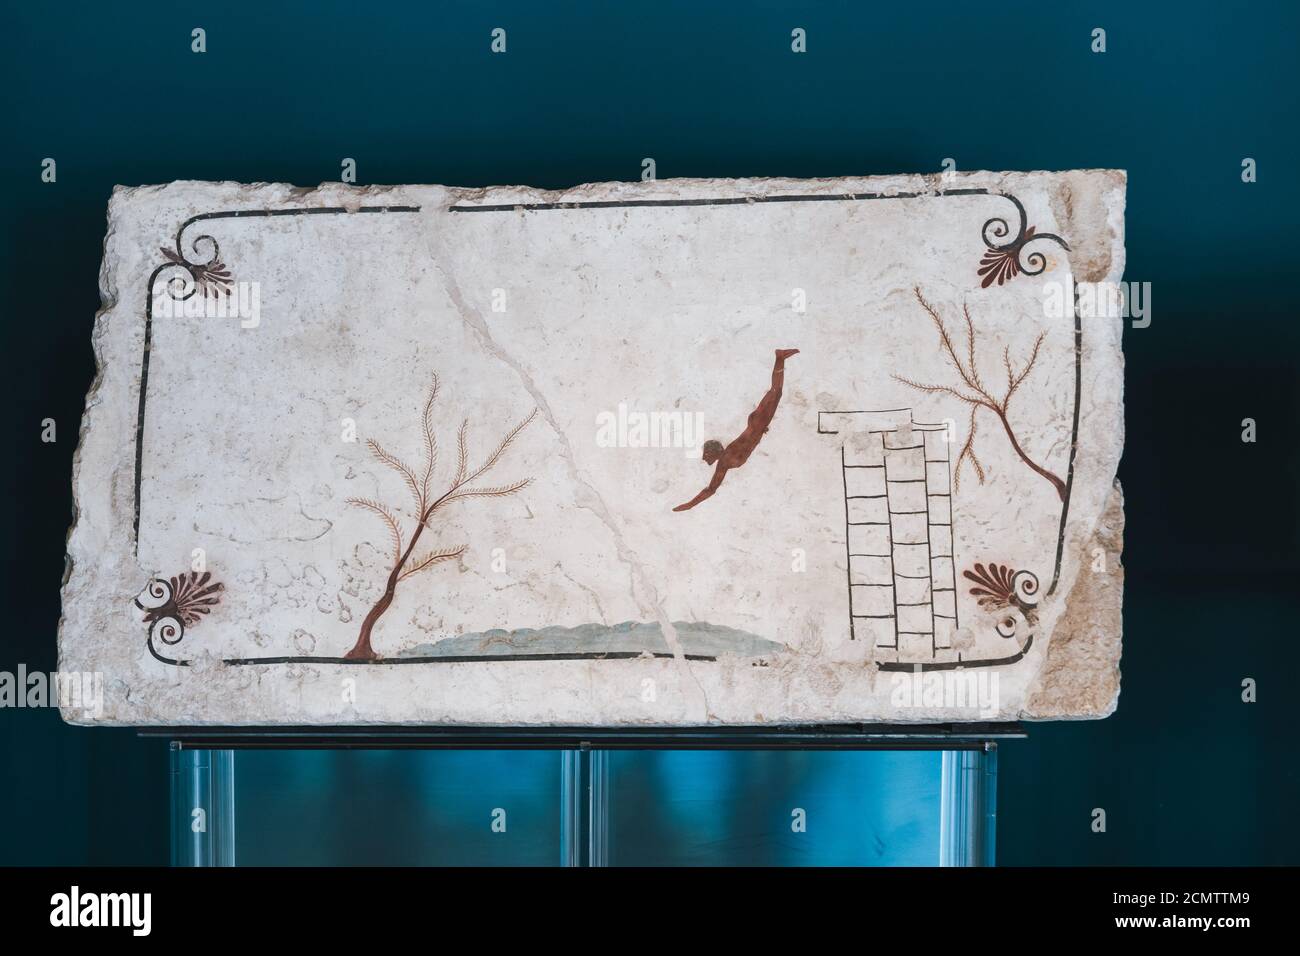 Paestum, Italia - 25 2020 de agosto: Tumba del buzo o Tomba del Tuffatore, cubrir Slab con fresco, un Arteact de Magna Graecia Foto de stock